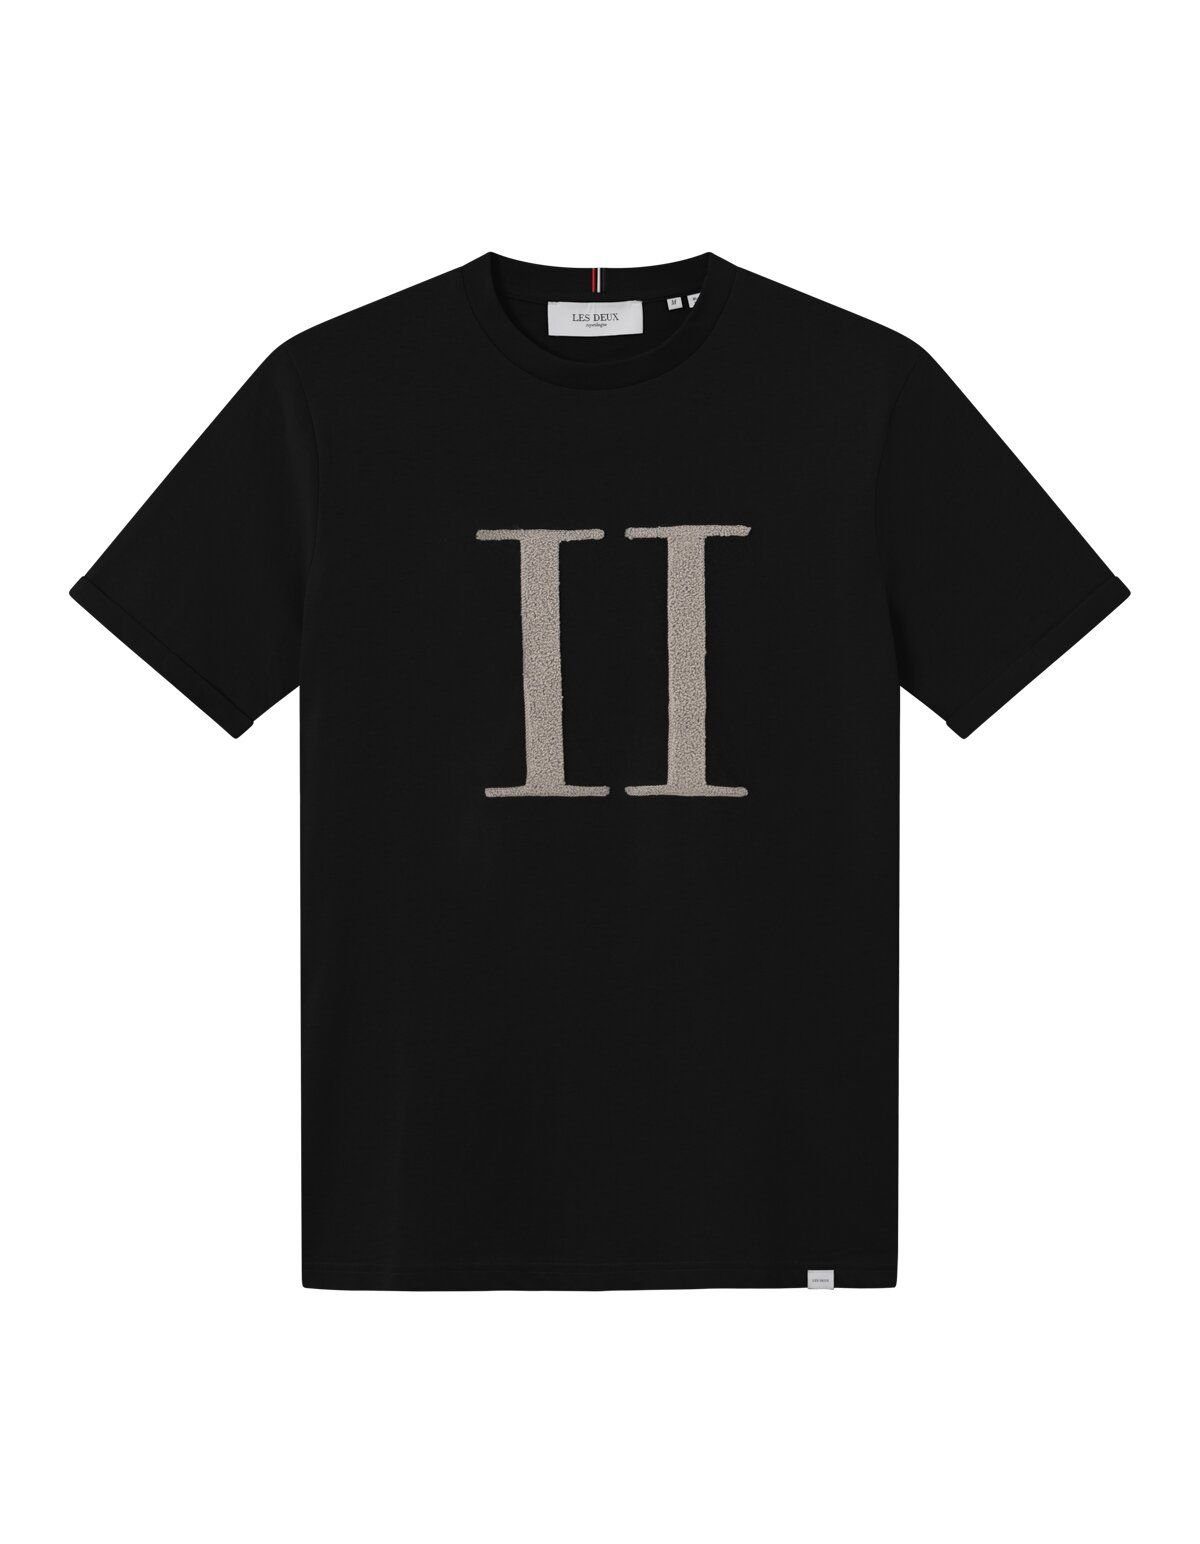 Les Deux S T-Shirt 100815-Black/Light